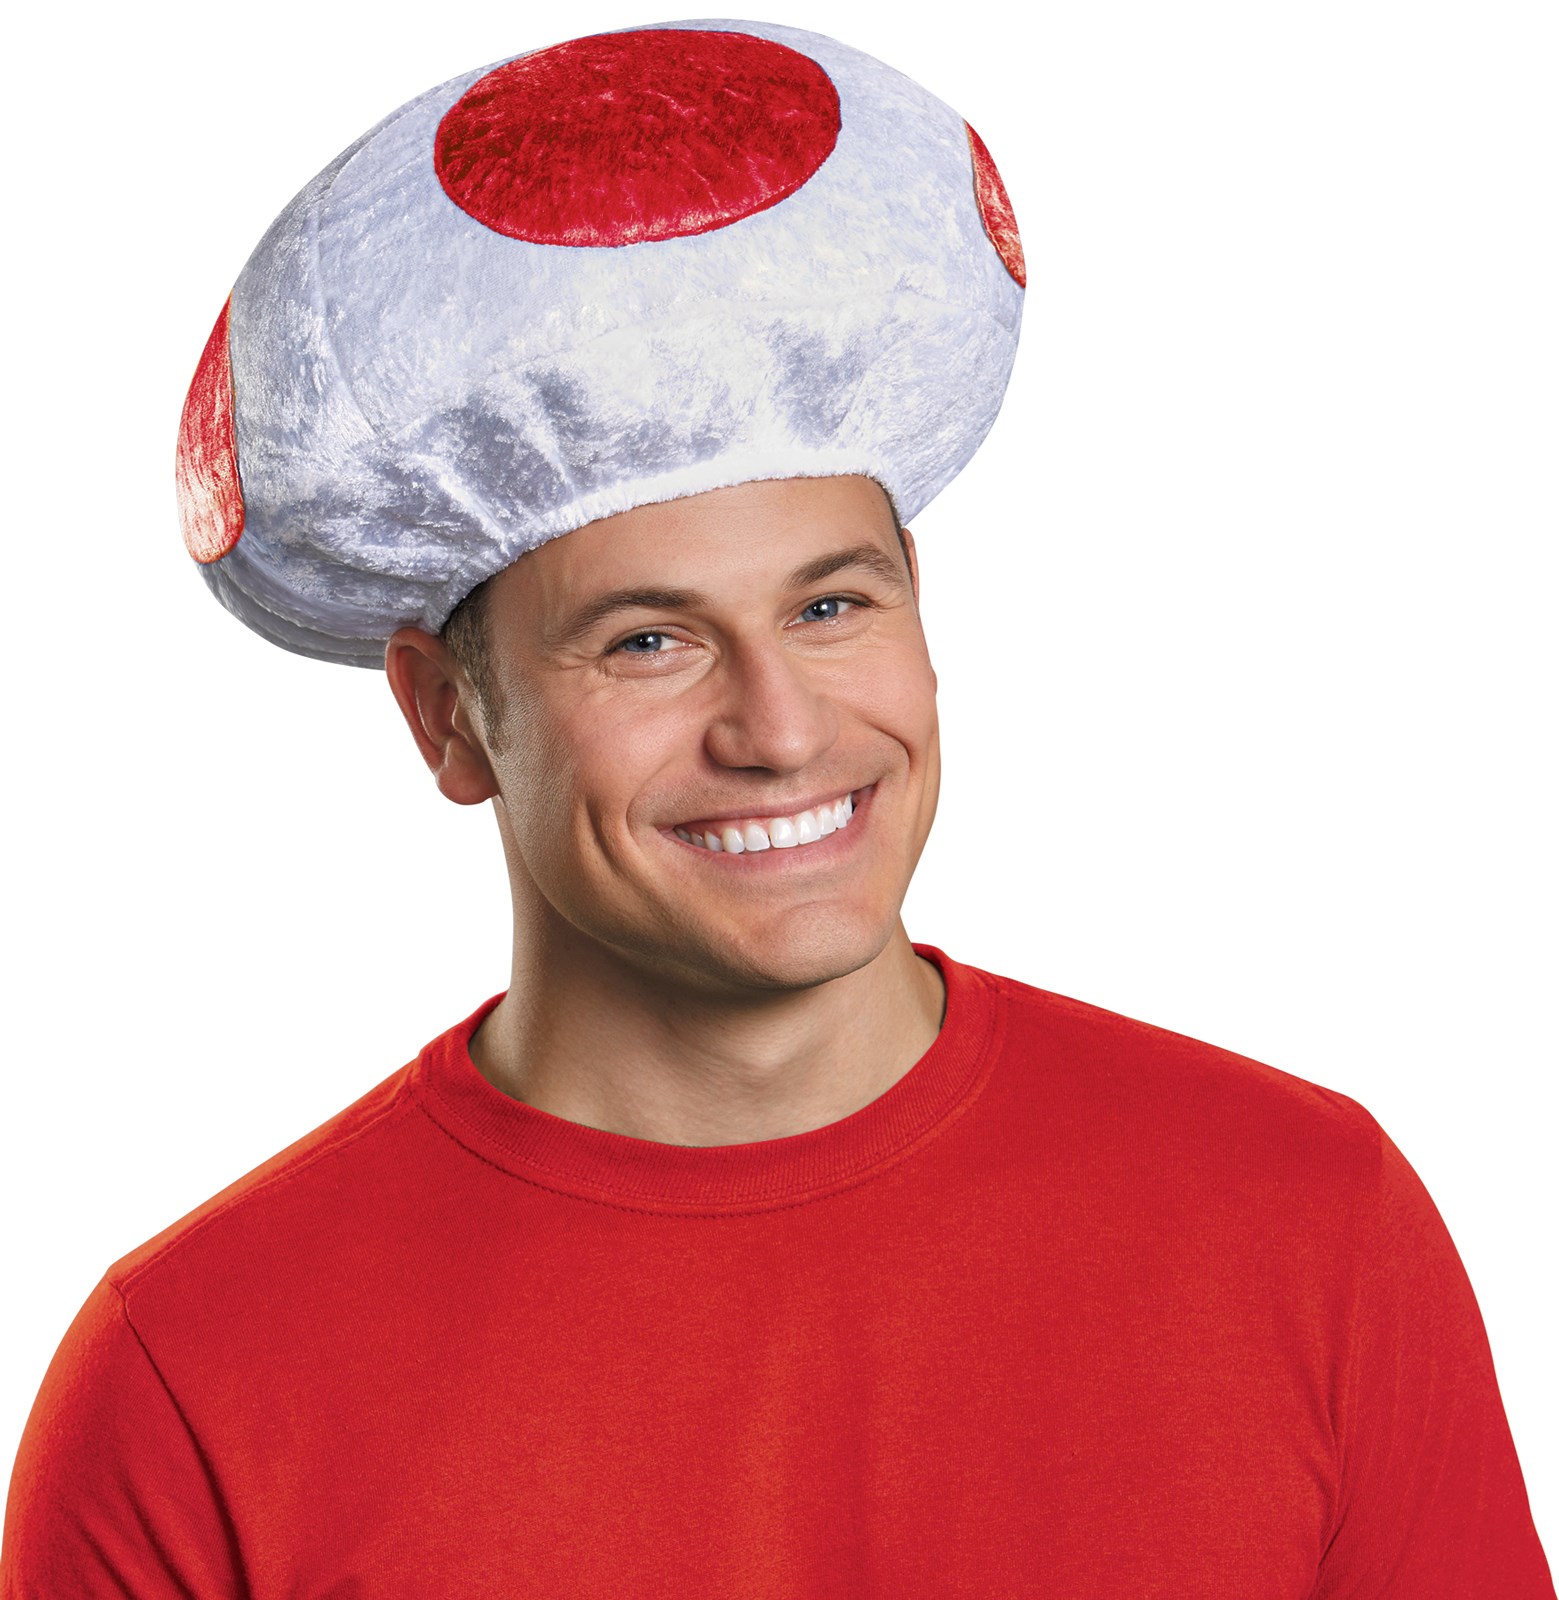 Super Mario Bros: Adult Red Mushroom Hat